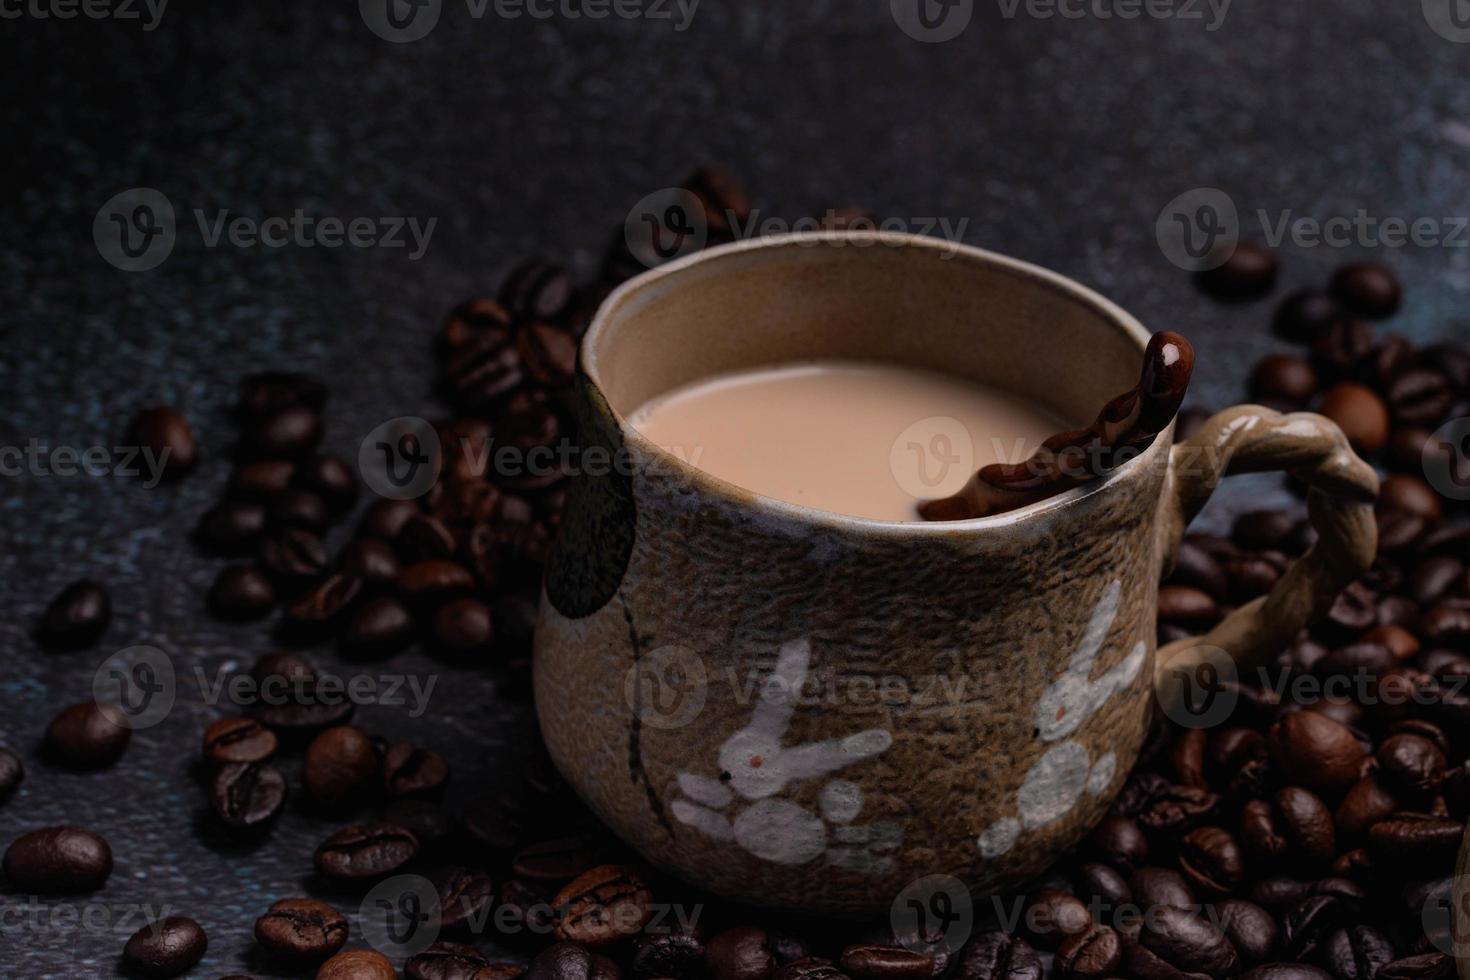 duas canecas de café com grãos de café em um pano de fundo escuro. foto